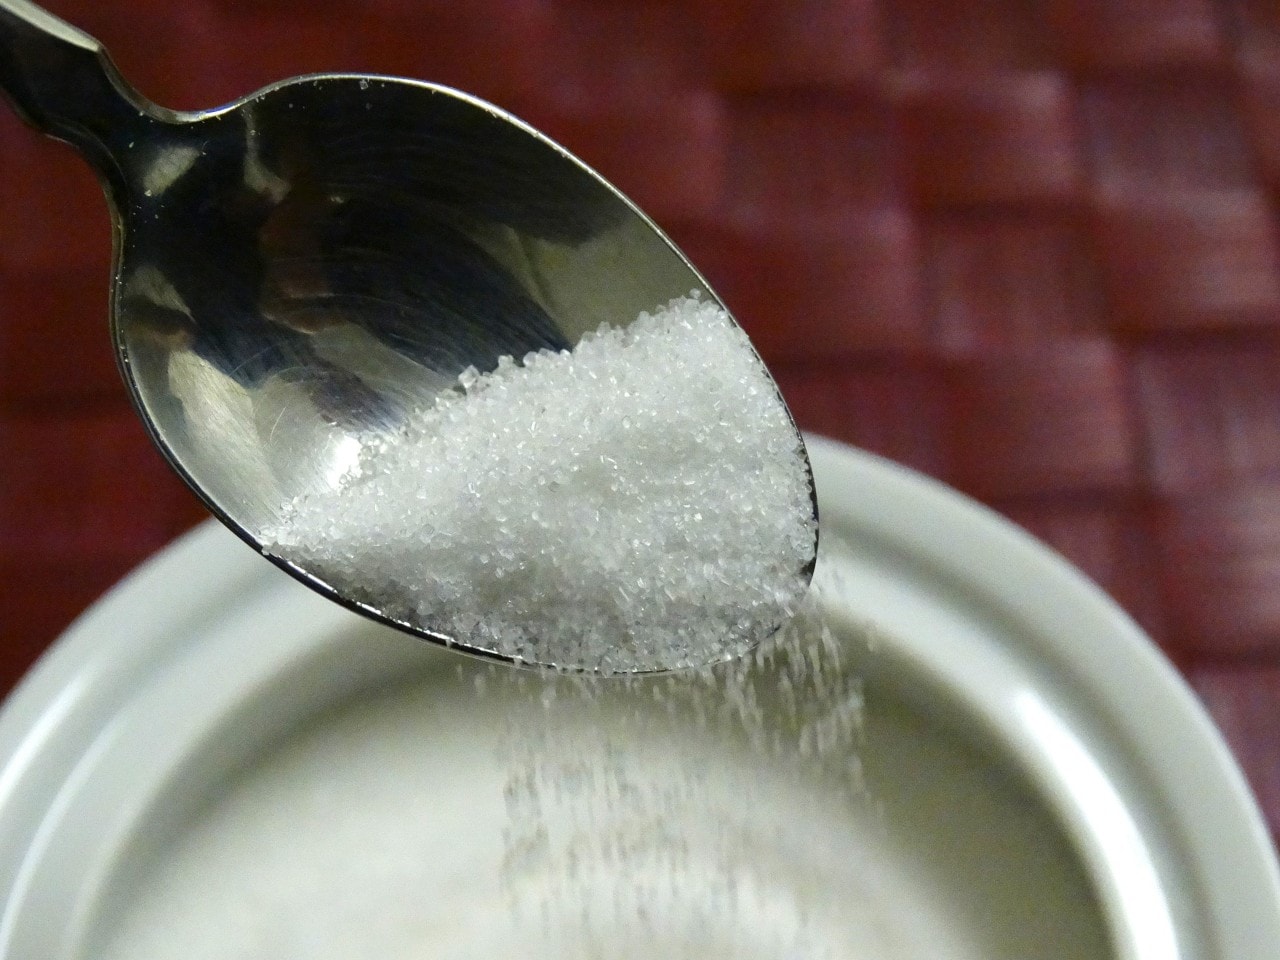 Artificial sweetener and sugar